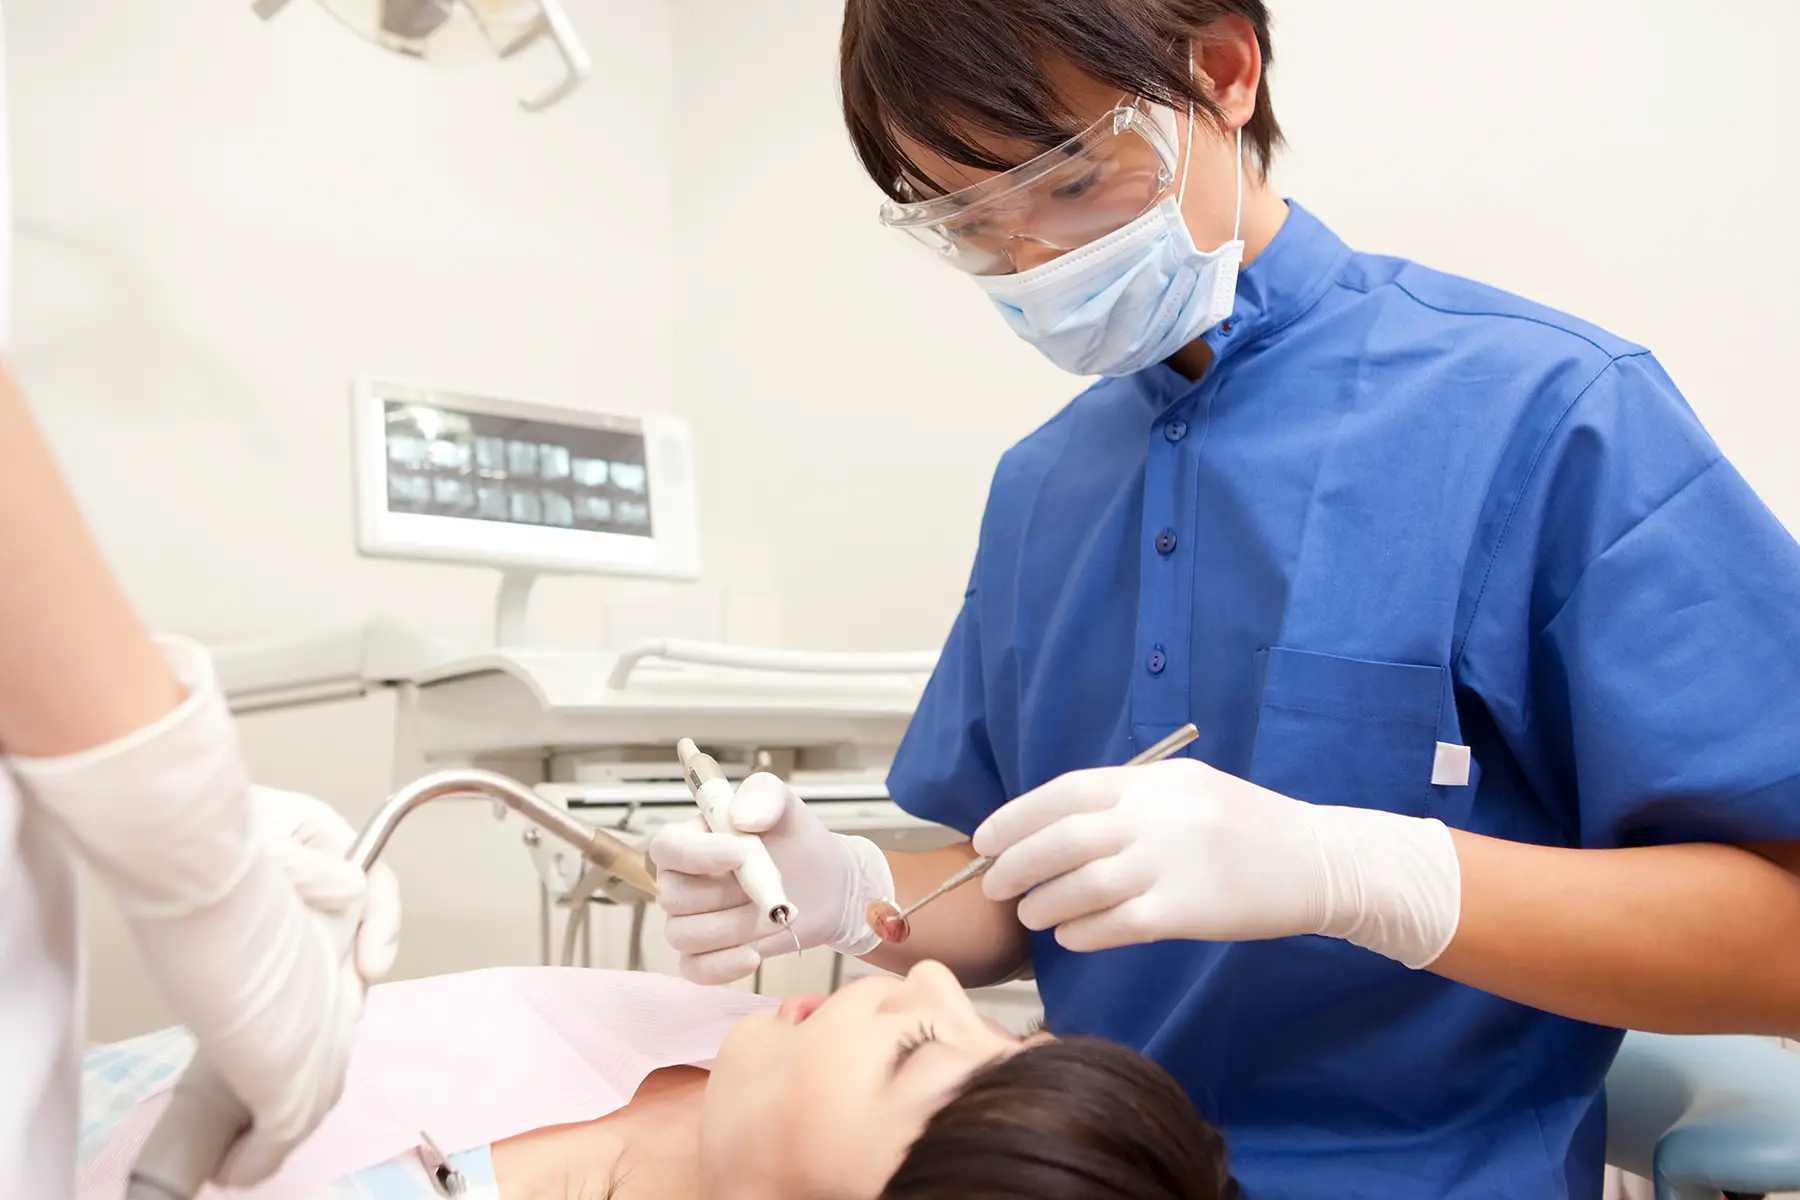 Patient undergoing a dental procedure